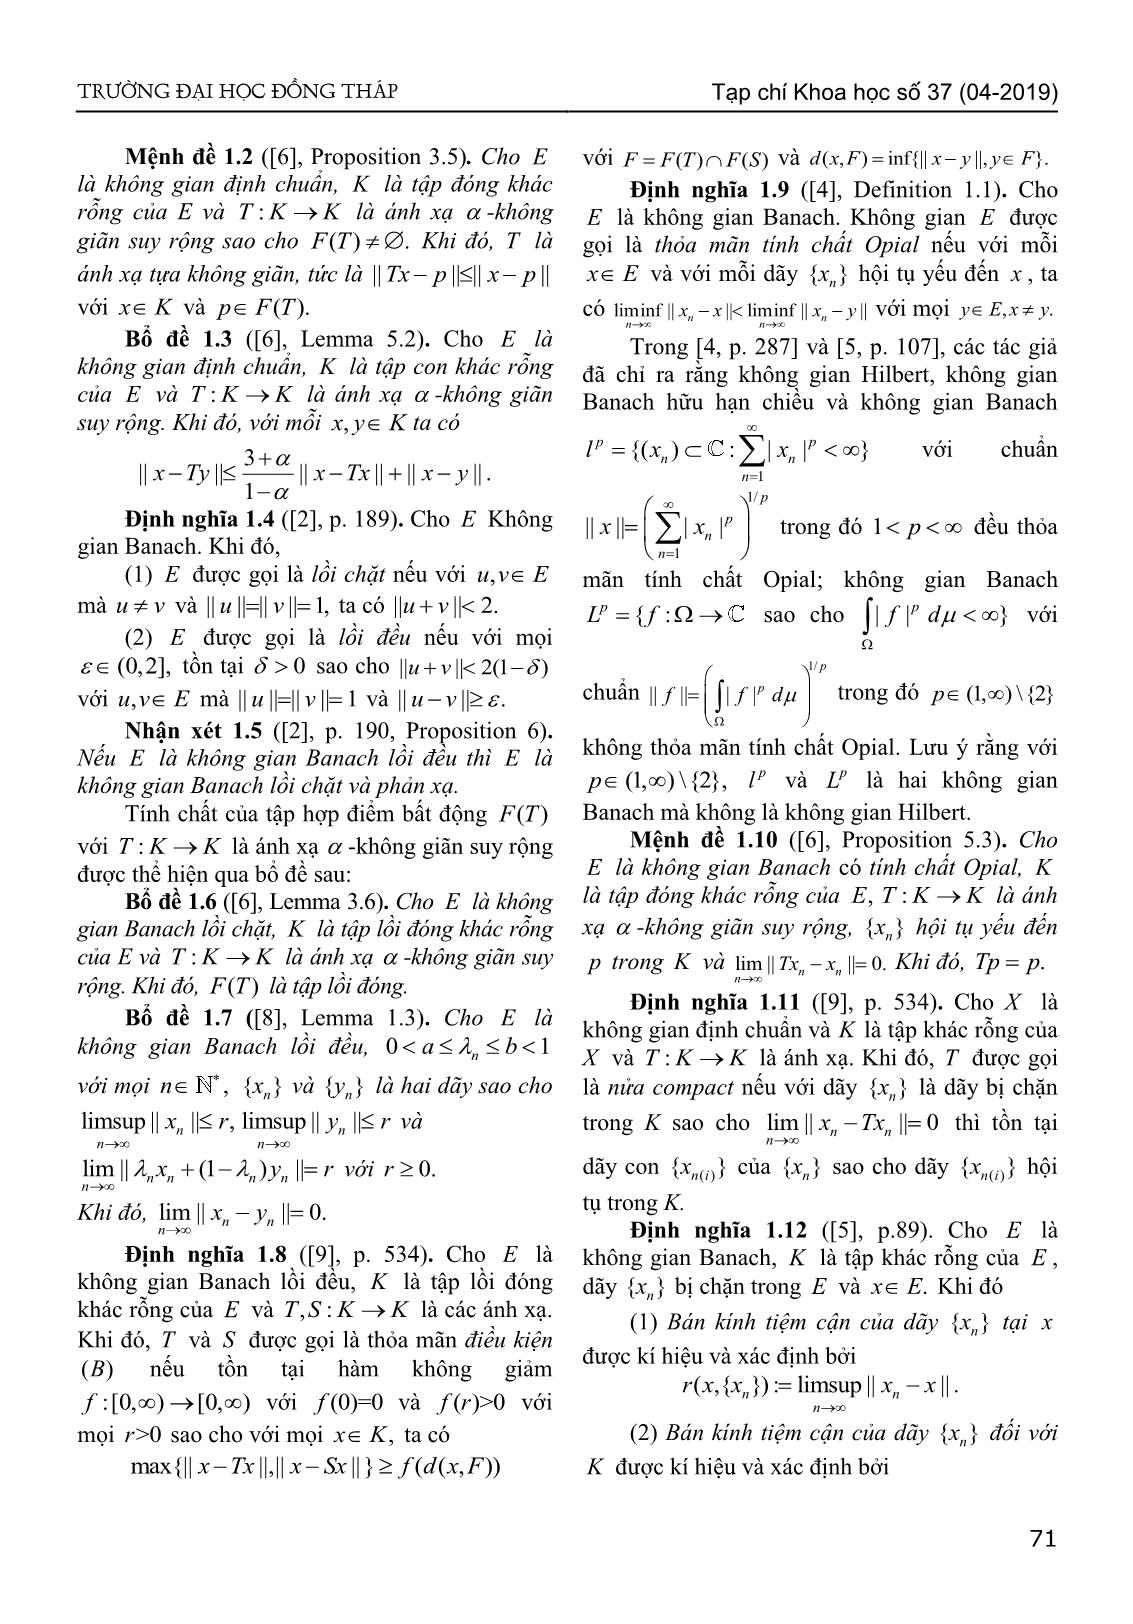 Sự hội tụ của dãy lặp kiểu Agarwal đến điểm bất động chung của hai ánh xạ - Không giãn suy rộng trong không gian Banach lồi đều trang 2